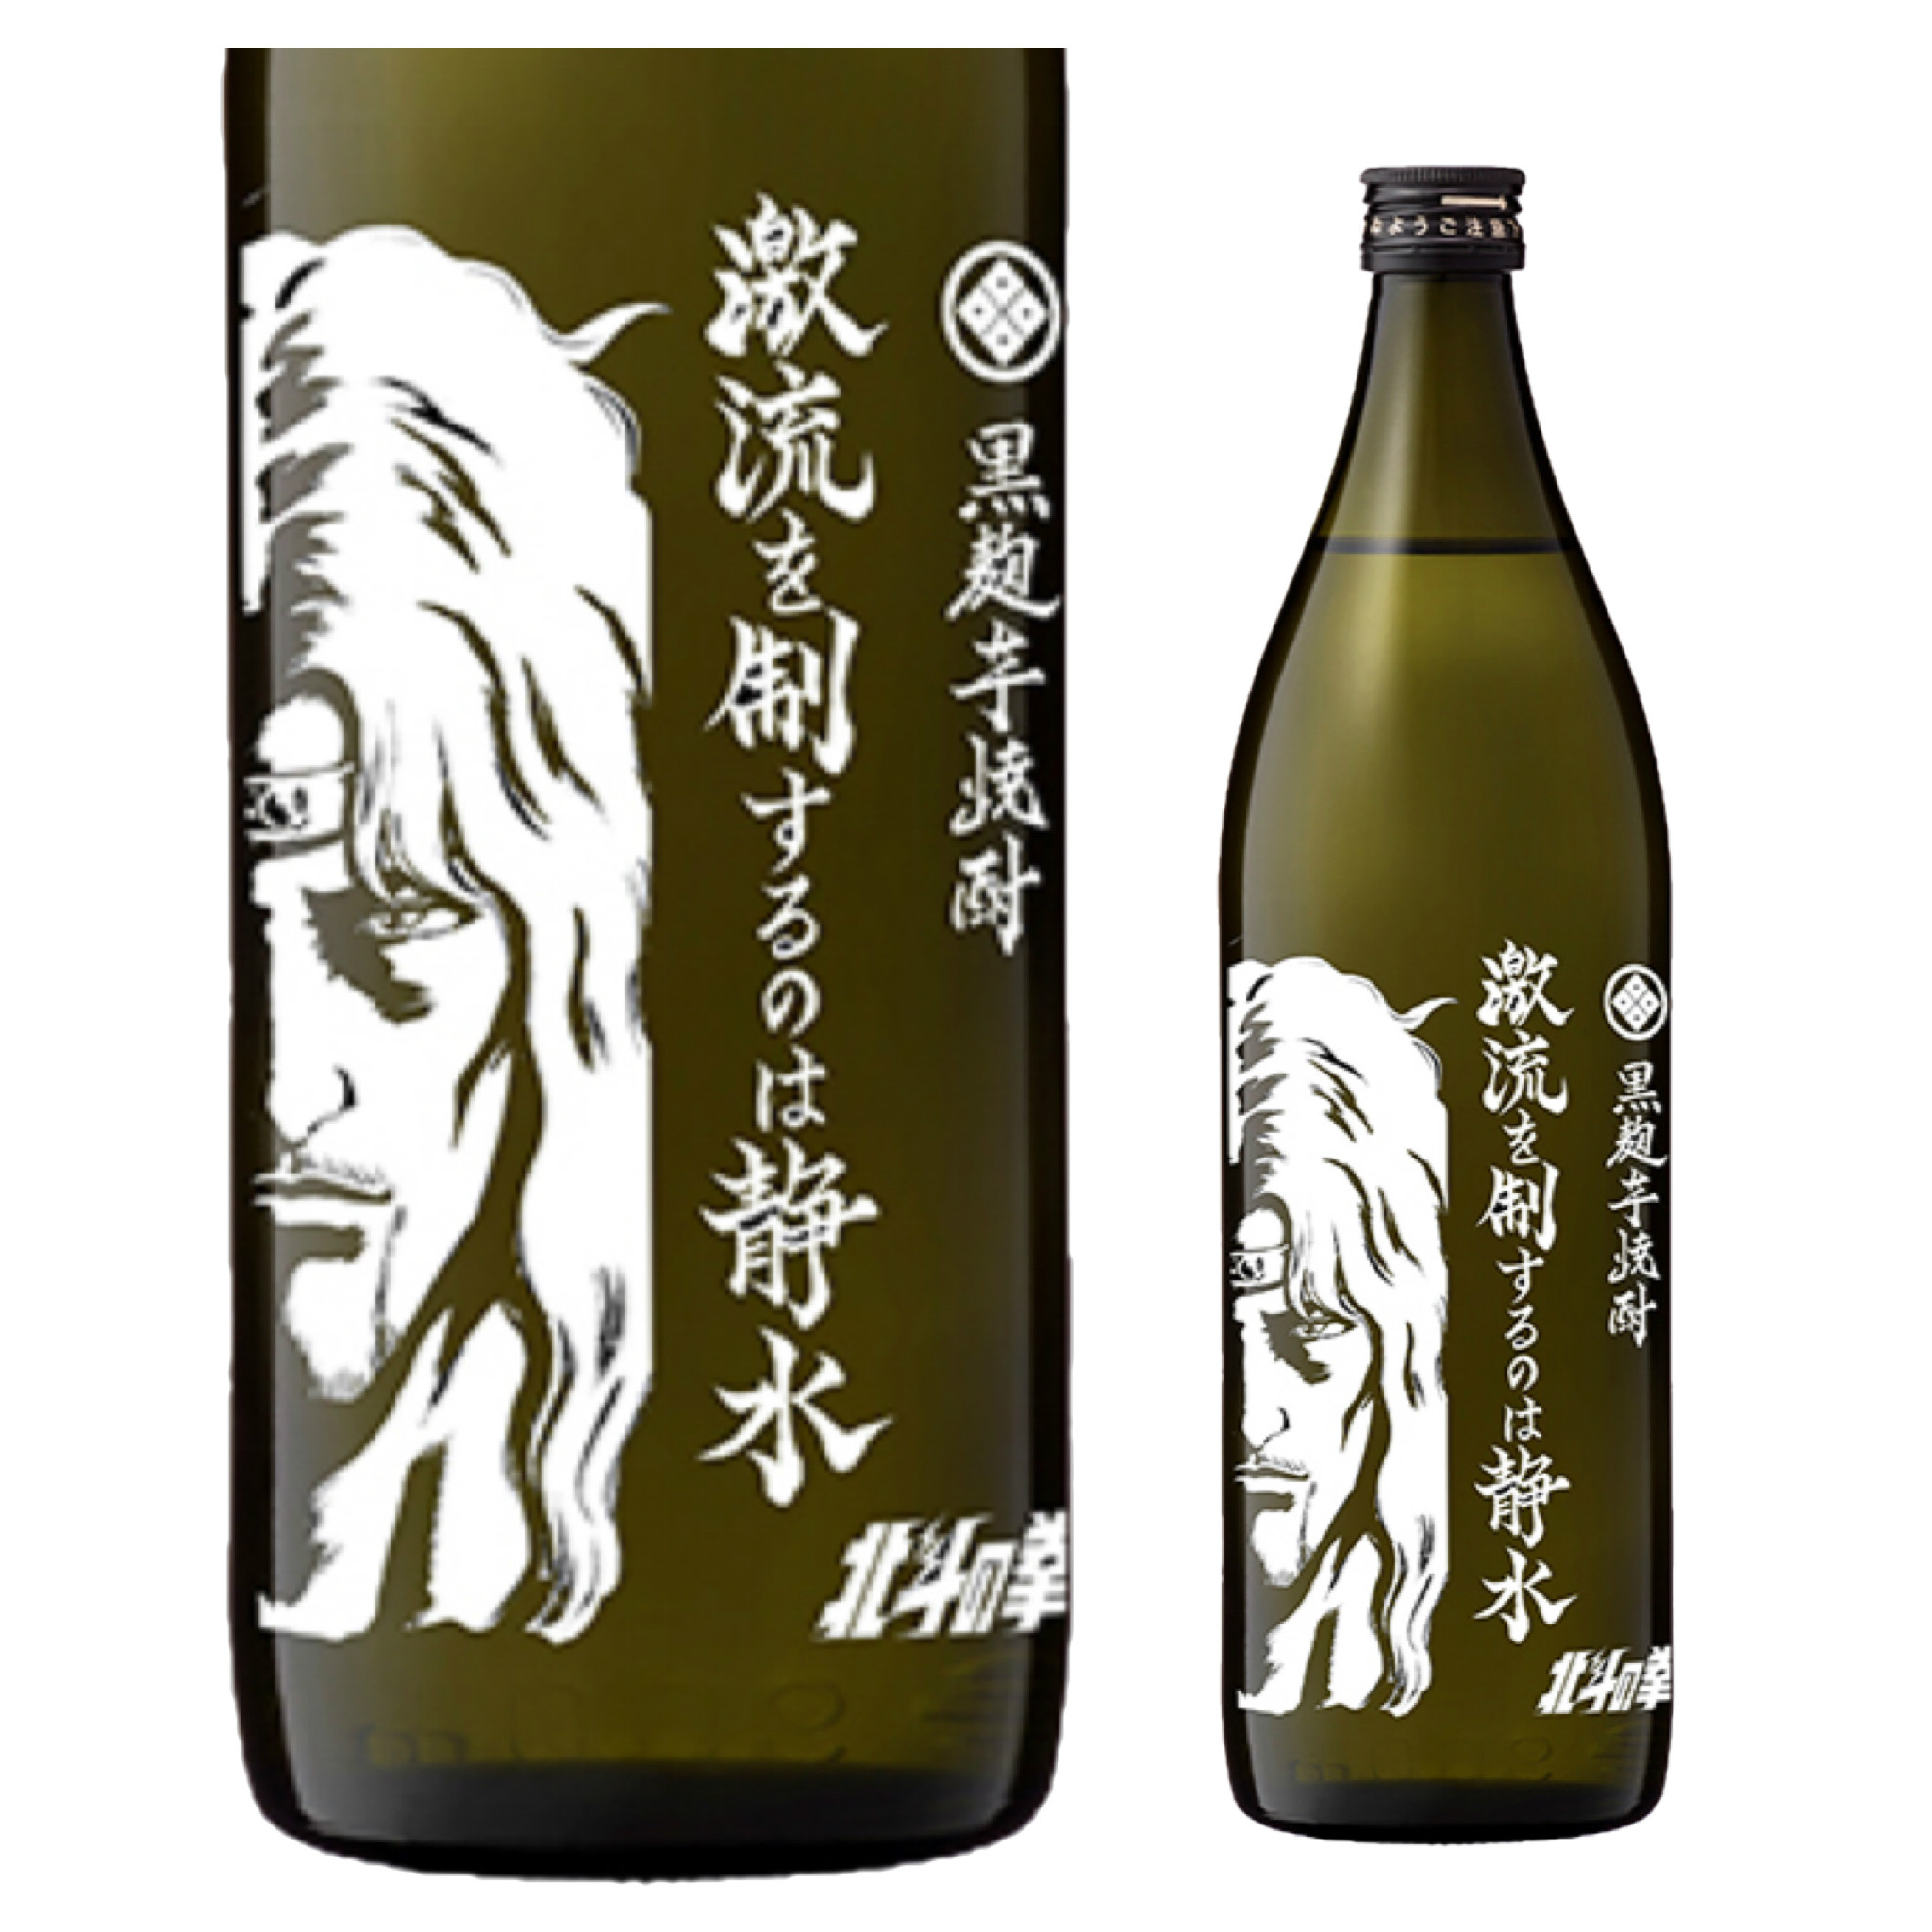 光武酒造 北斗の拳 芋焼酎 激流を制するのは静水 トキ | 高知の日本酒